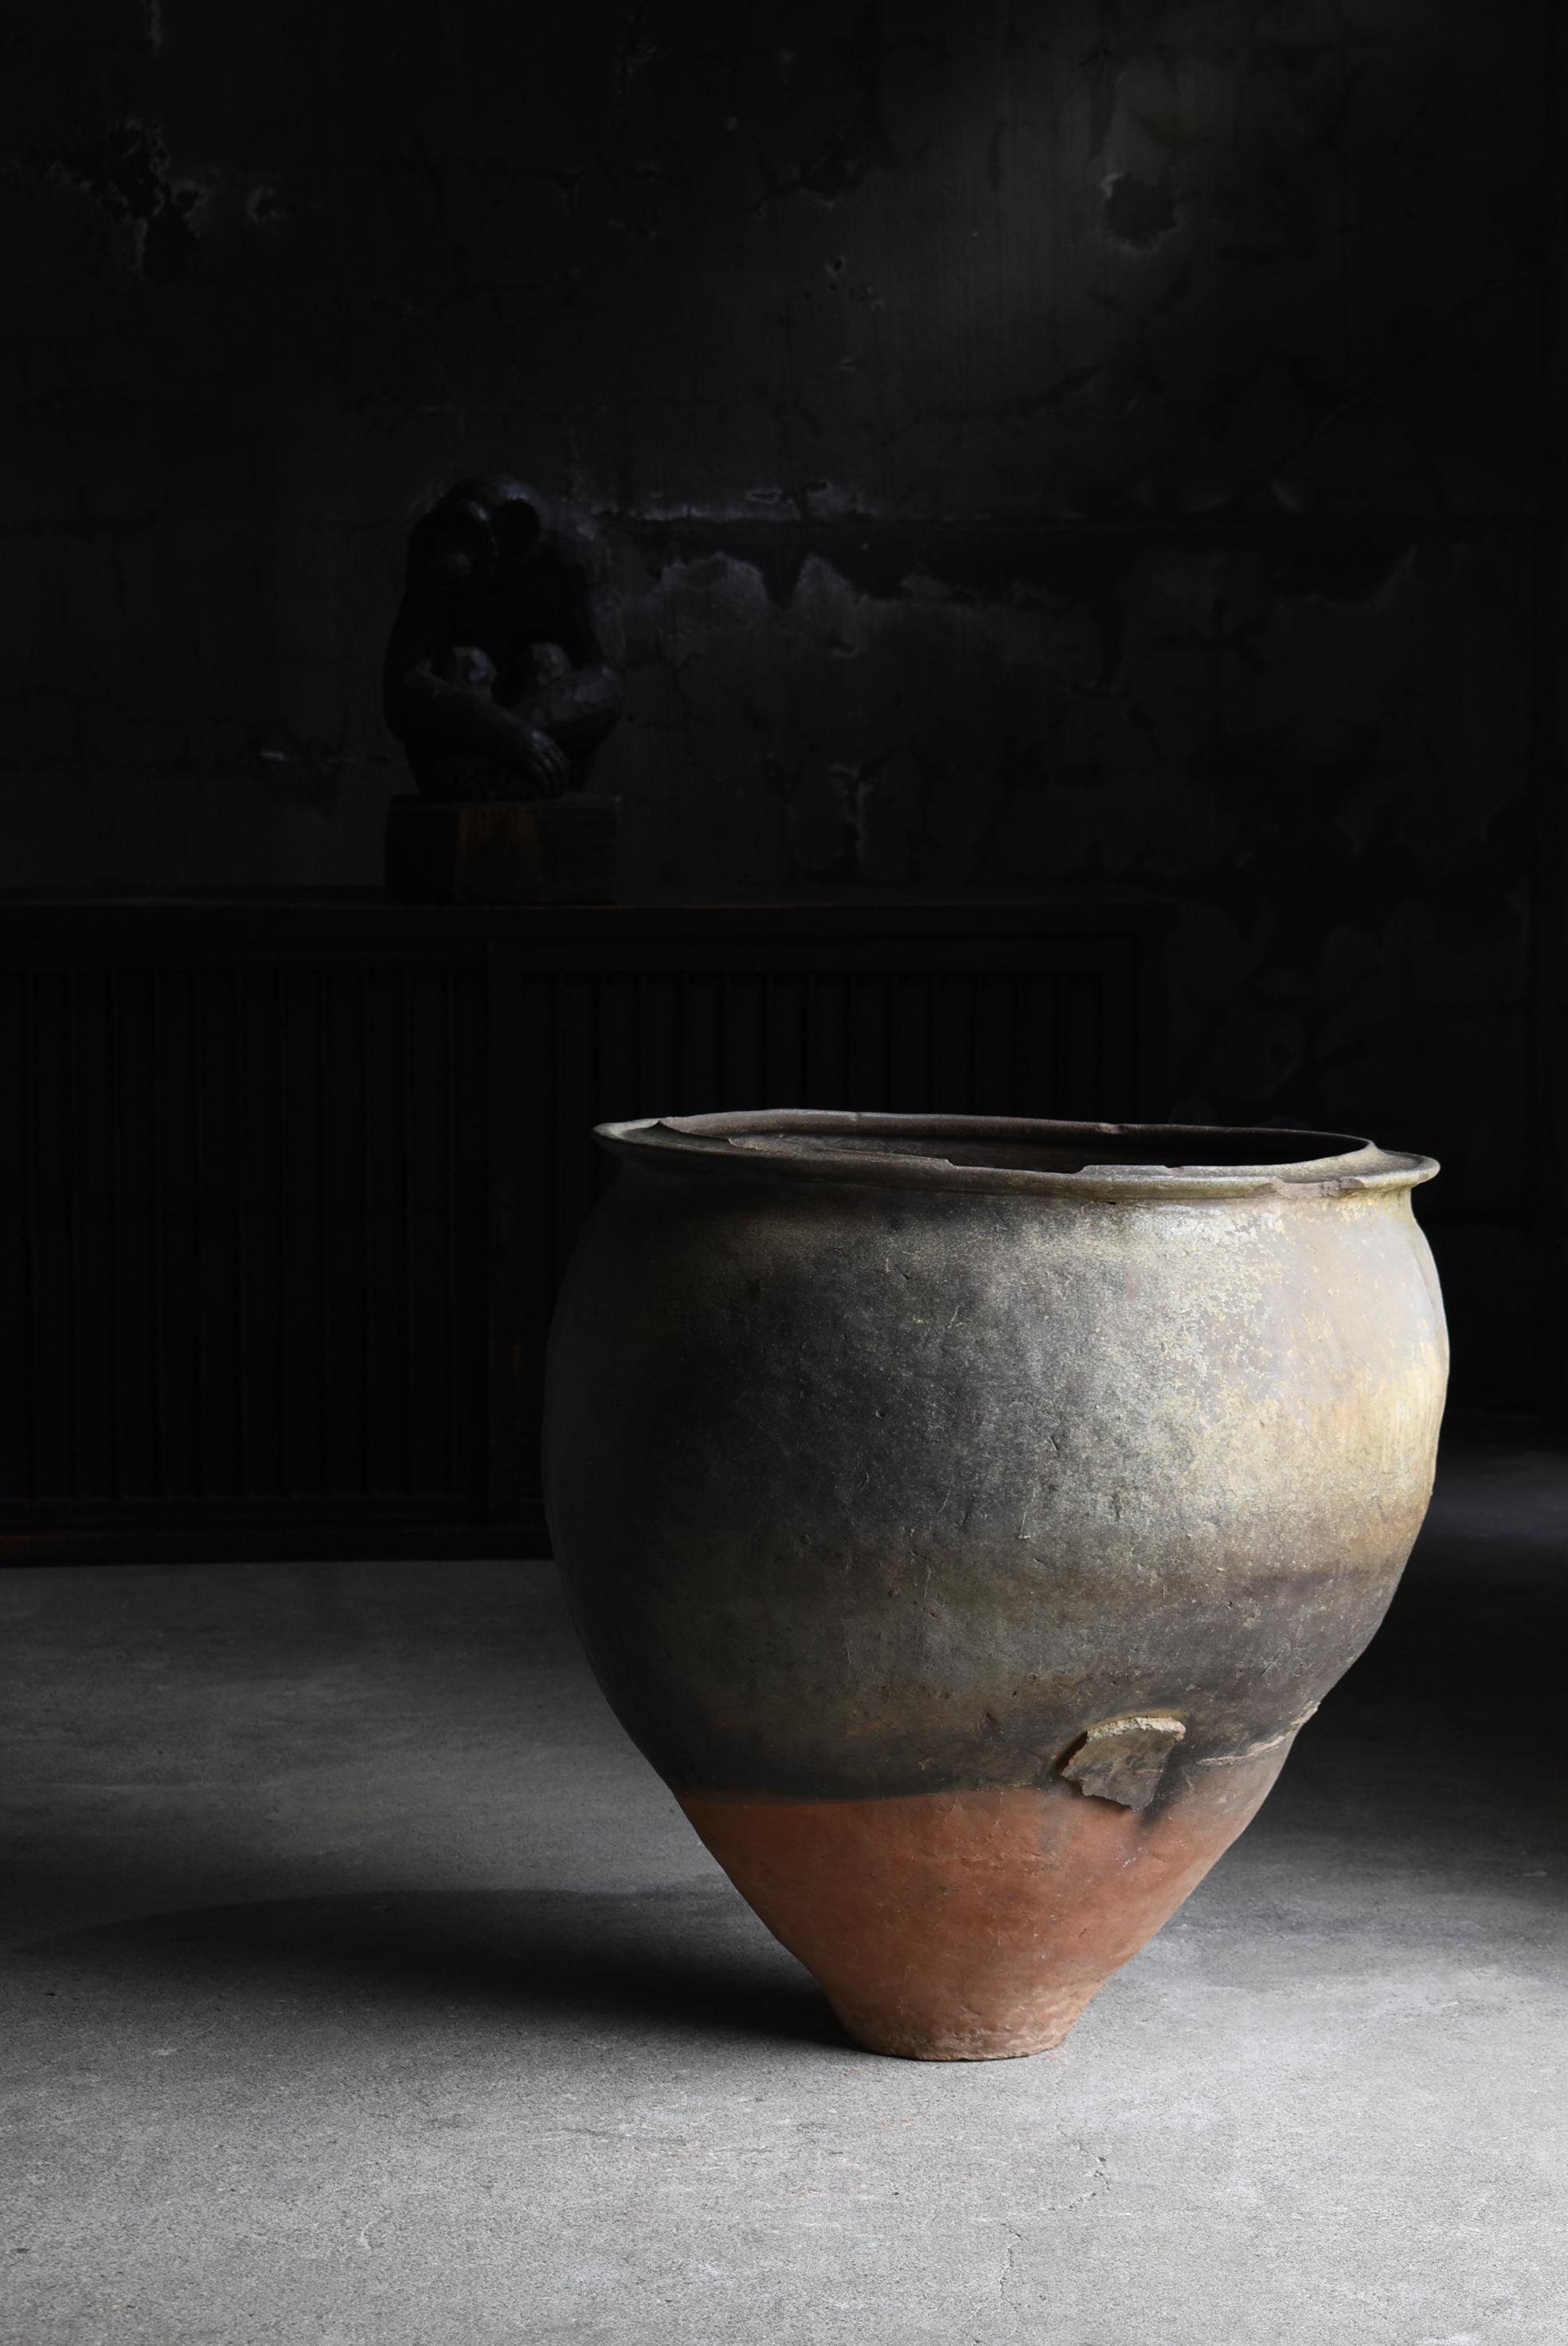 Dies ist eine sehr große Keramik-Vase in Japan gemacht.
In Japan wird sie 